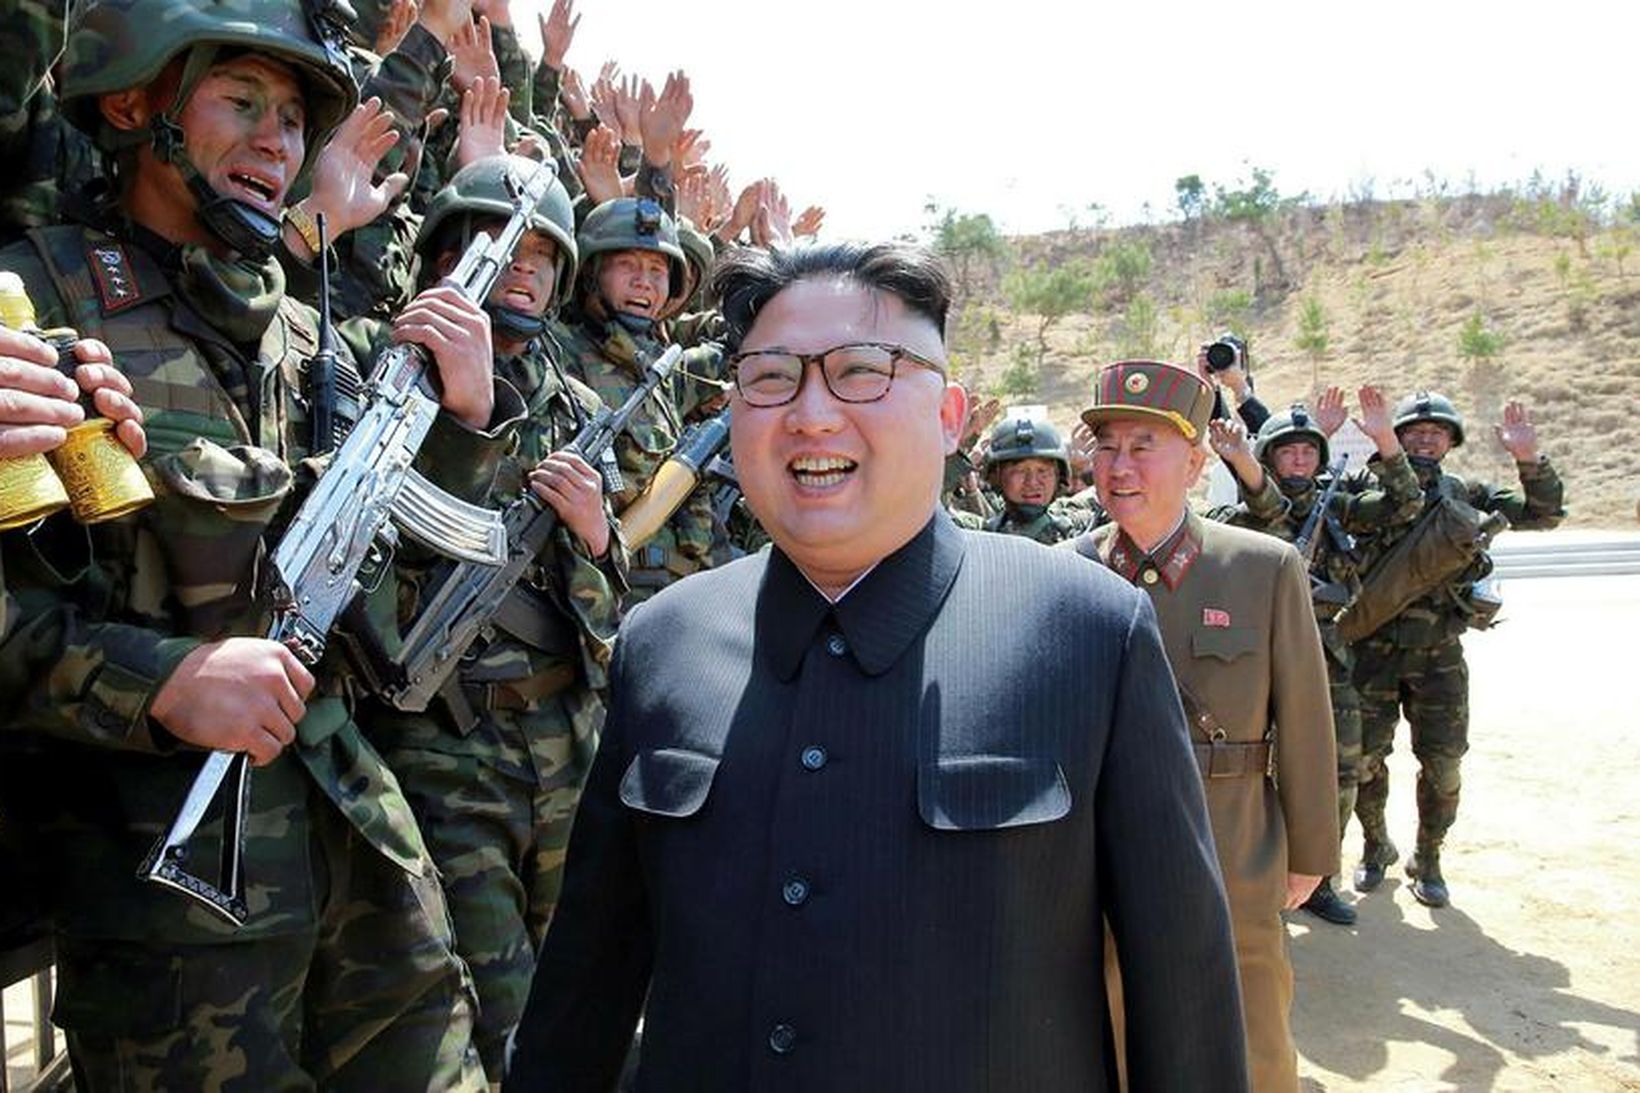 Kim Jong-un, leiðtogi Norður-Kóreu, á hersýningu.